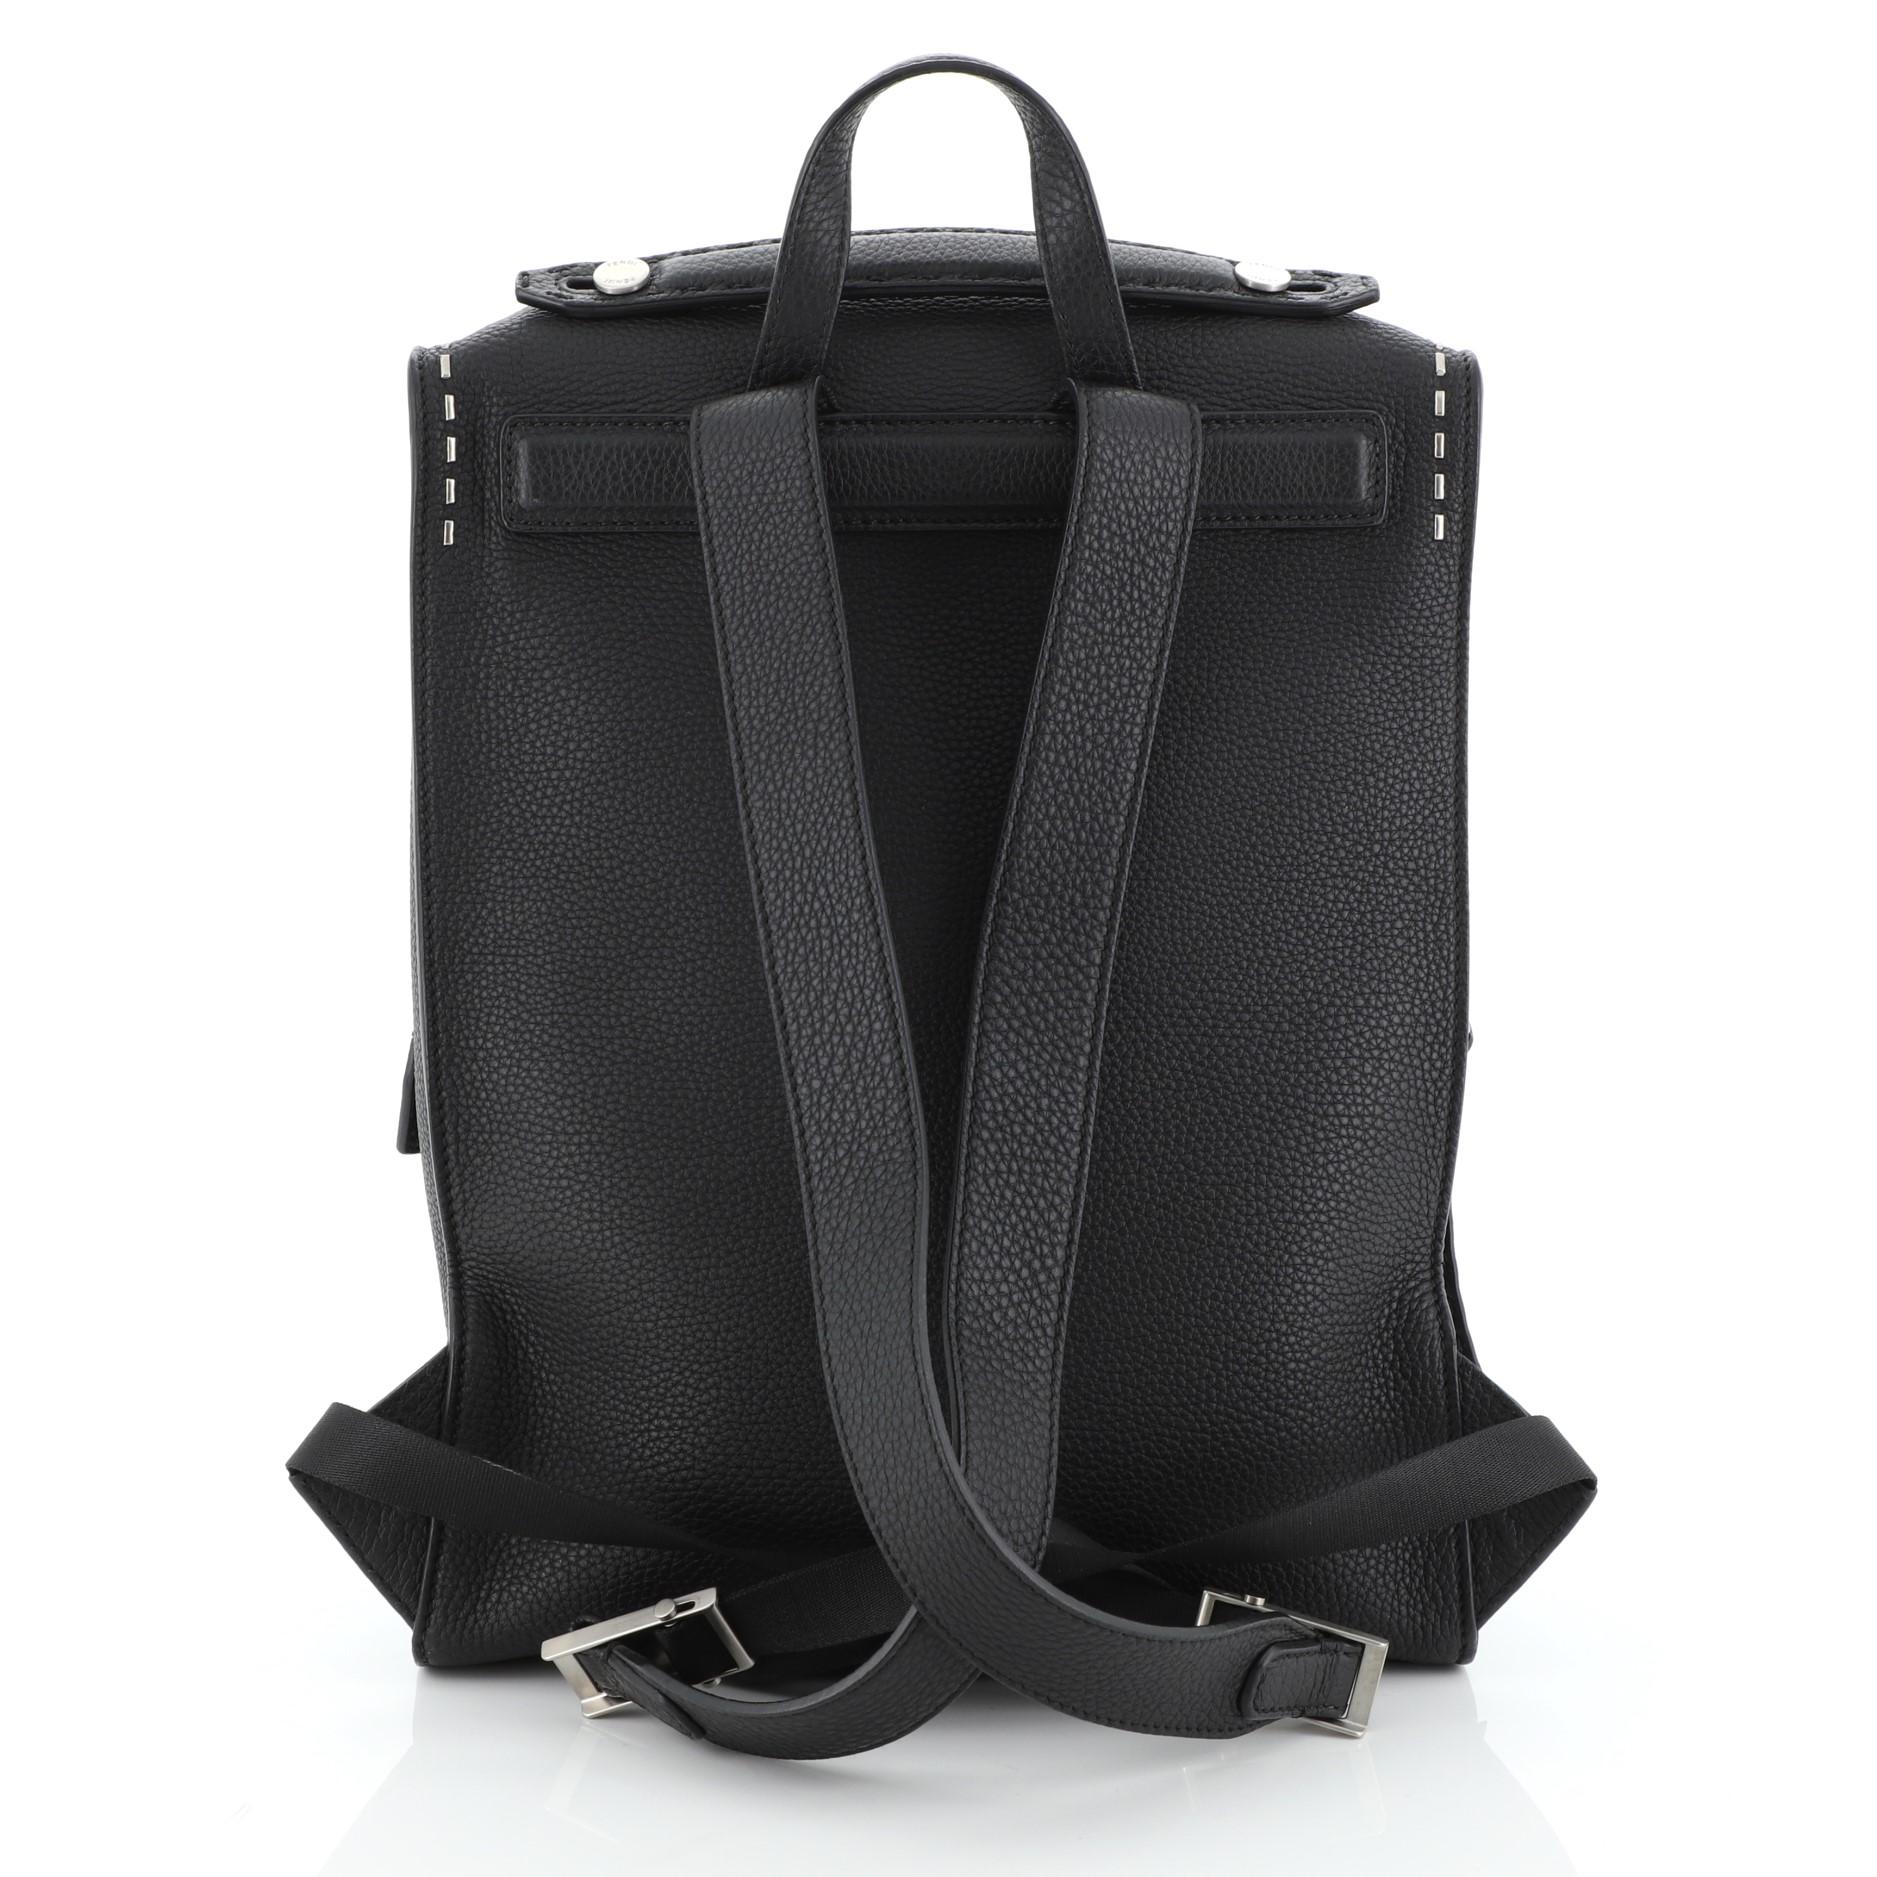 Black Fendi Selleria Backpack Leather Large